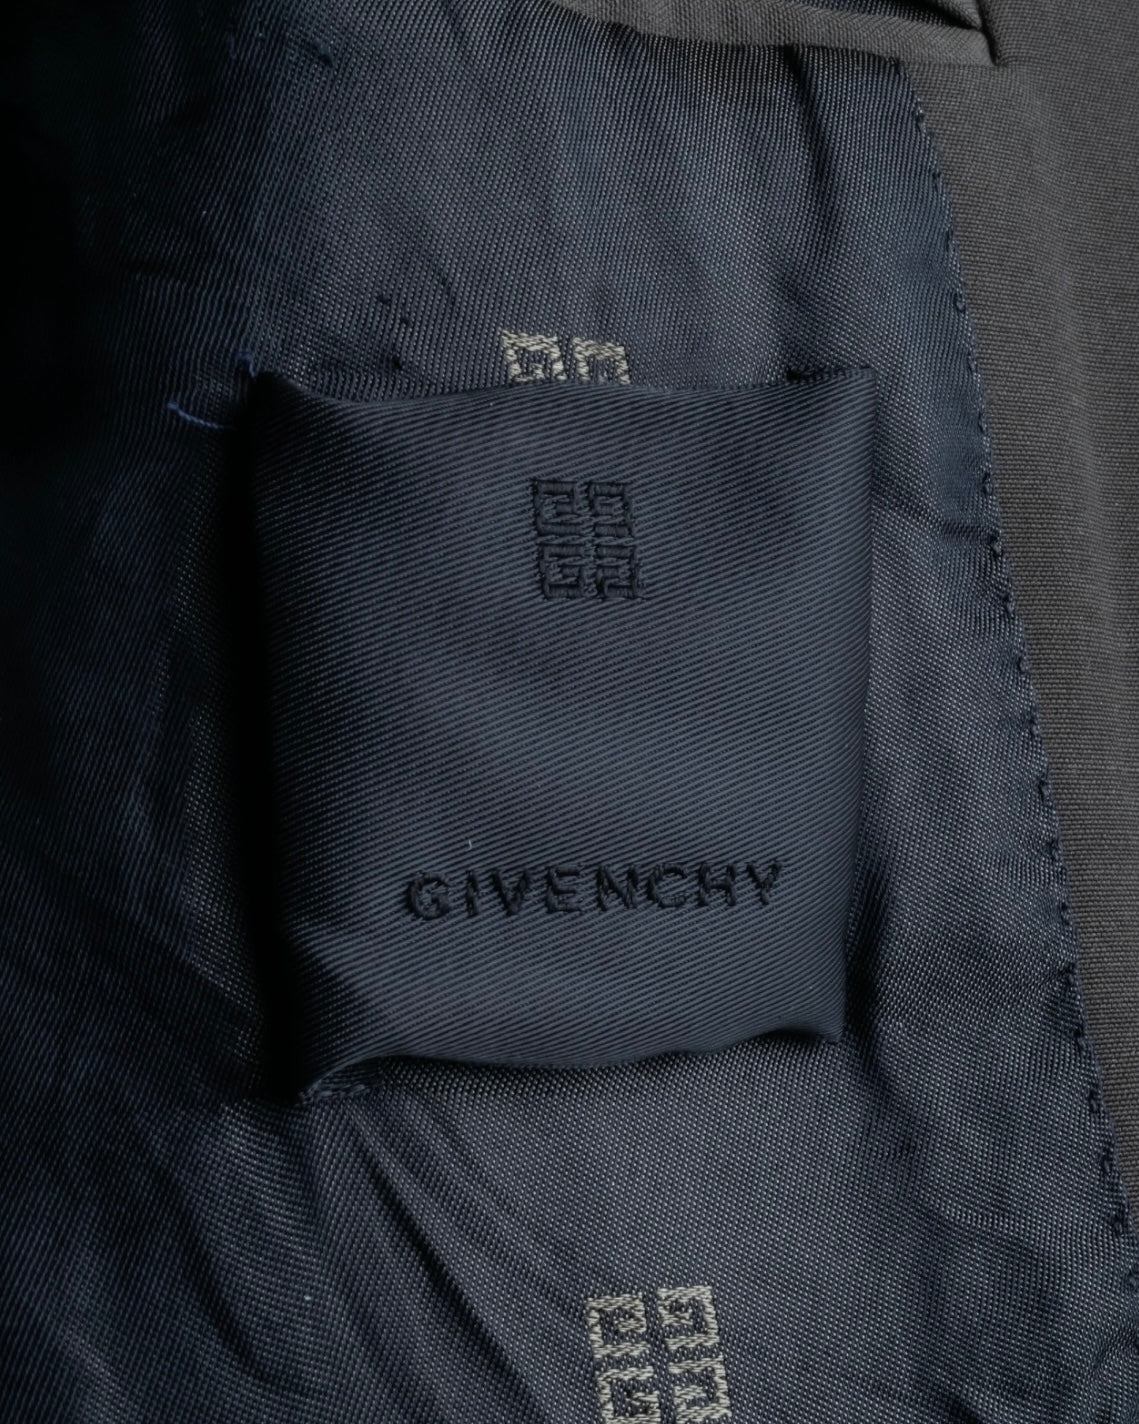 "Givenchy" Functional Design Spring Setup